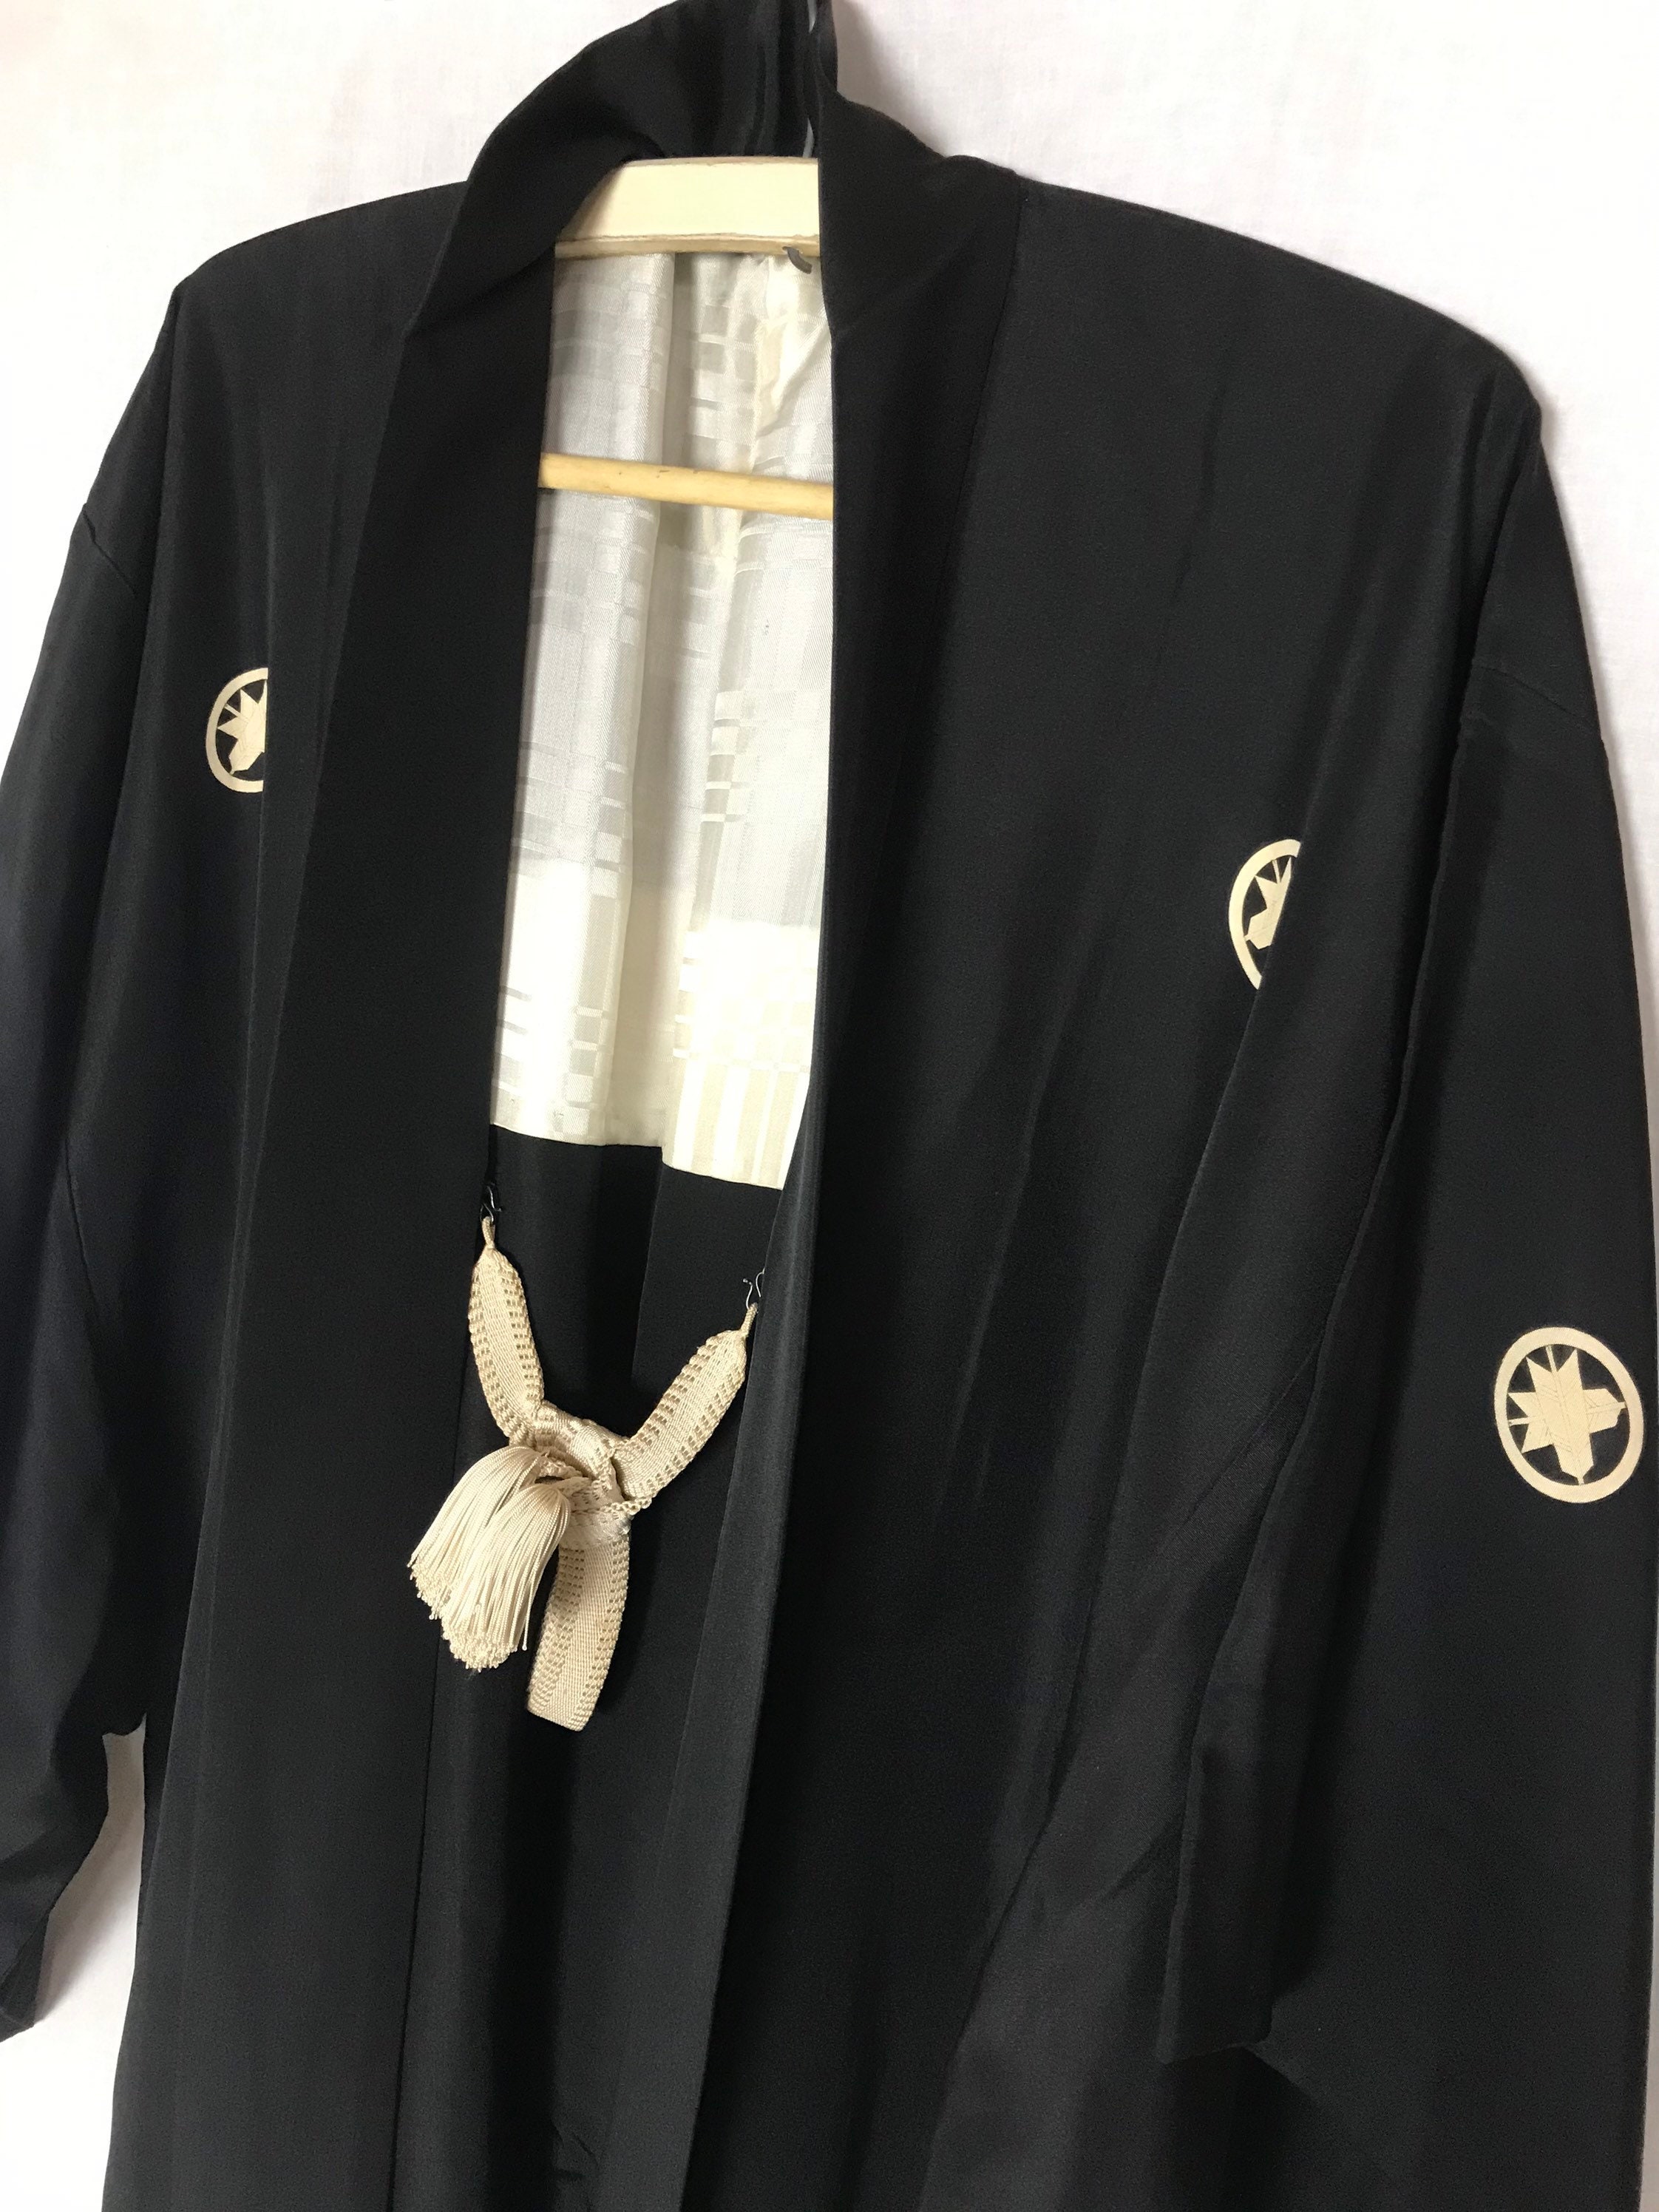 Black silk kimono - Etsy 日本